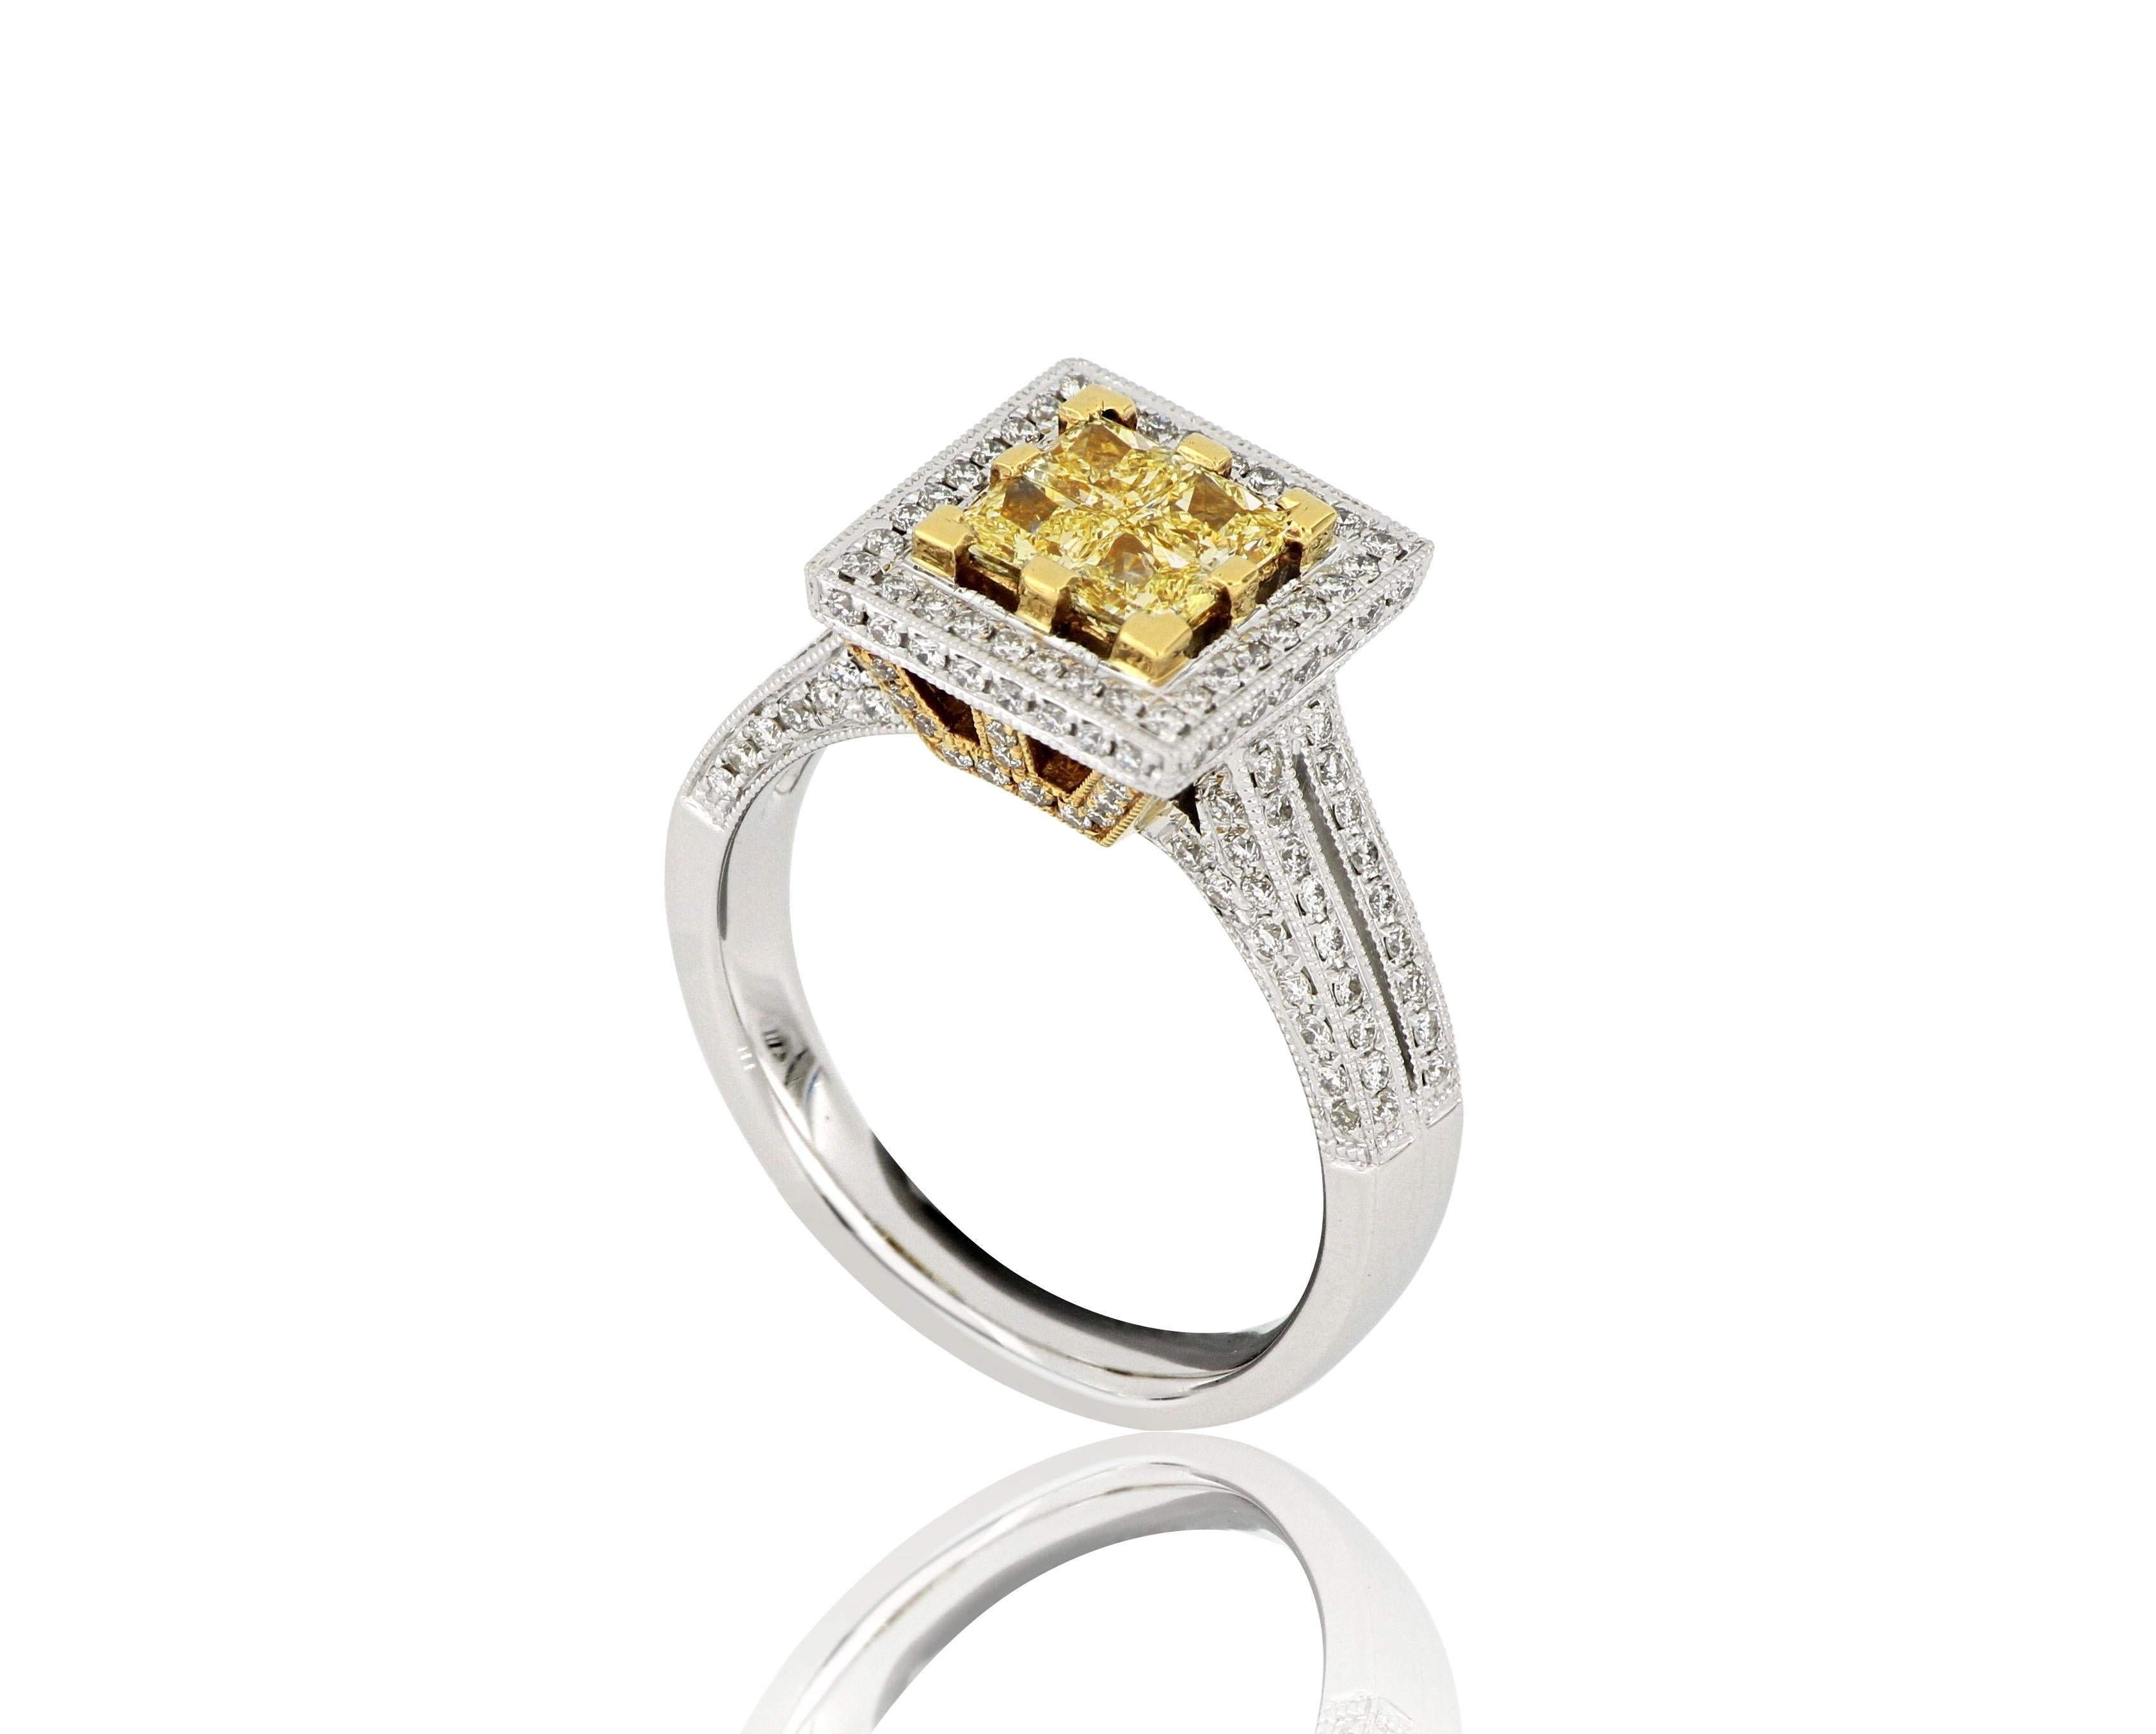 Une bague en diamant, sertie de diamants naturels taillés au carré  diamants jaunes pesant approximativement 0.62 carats, flanqués de diamants blancs taille brillant pesant approximativement 0.56 carats, montés en 18  Karat or blanc.
O'Che 1867 est